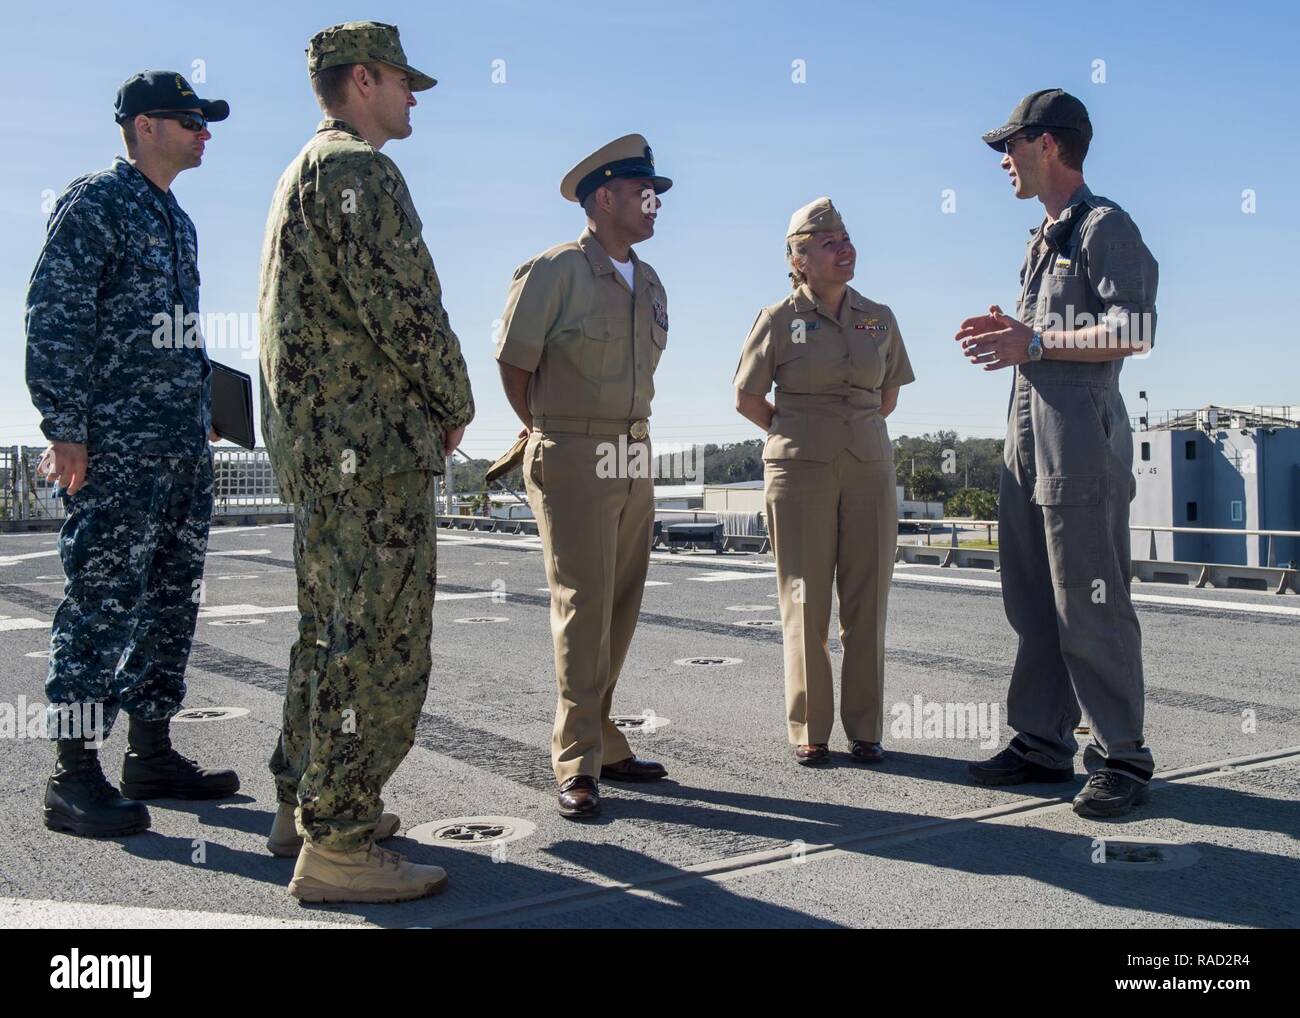 (Janvier 1985). 25, 2017) MAYPORT, Floride - Adm arrière. Linda R. Wackerman, commandant adjoint du Commandement Sud des forces navales des États-Unis/U.S. 4ème flotte (USNAVSO/FOURTHFLT), tours l'USNS Lance (T-EPF-1) avec Doug Casavant, capitaine du navire (à droite), à la Station Navale de Mayport, Floride 2017 Promesse continue est un U.S. Southern Command-parrainé et U.S. Naval Forces Southern Command/U.S. 4ème flotte-déploiement effectué pour mener des opérations civiles et militaires y compris l'aide humanitaire, les missions de formation et de soins médicaux, dentaires et vétérinaires, de l'assistance dans un effort pour montrer le soutien des États-Unis et de l'engagement au centre et ainsi Banque D'Images